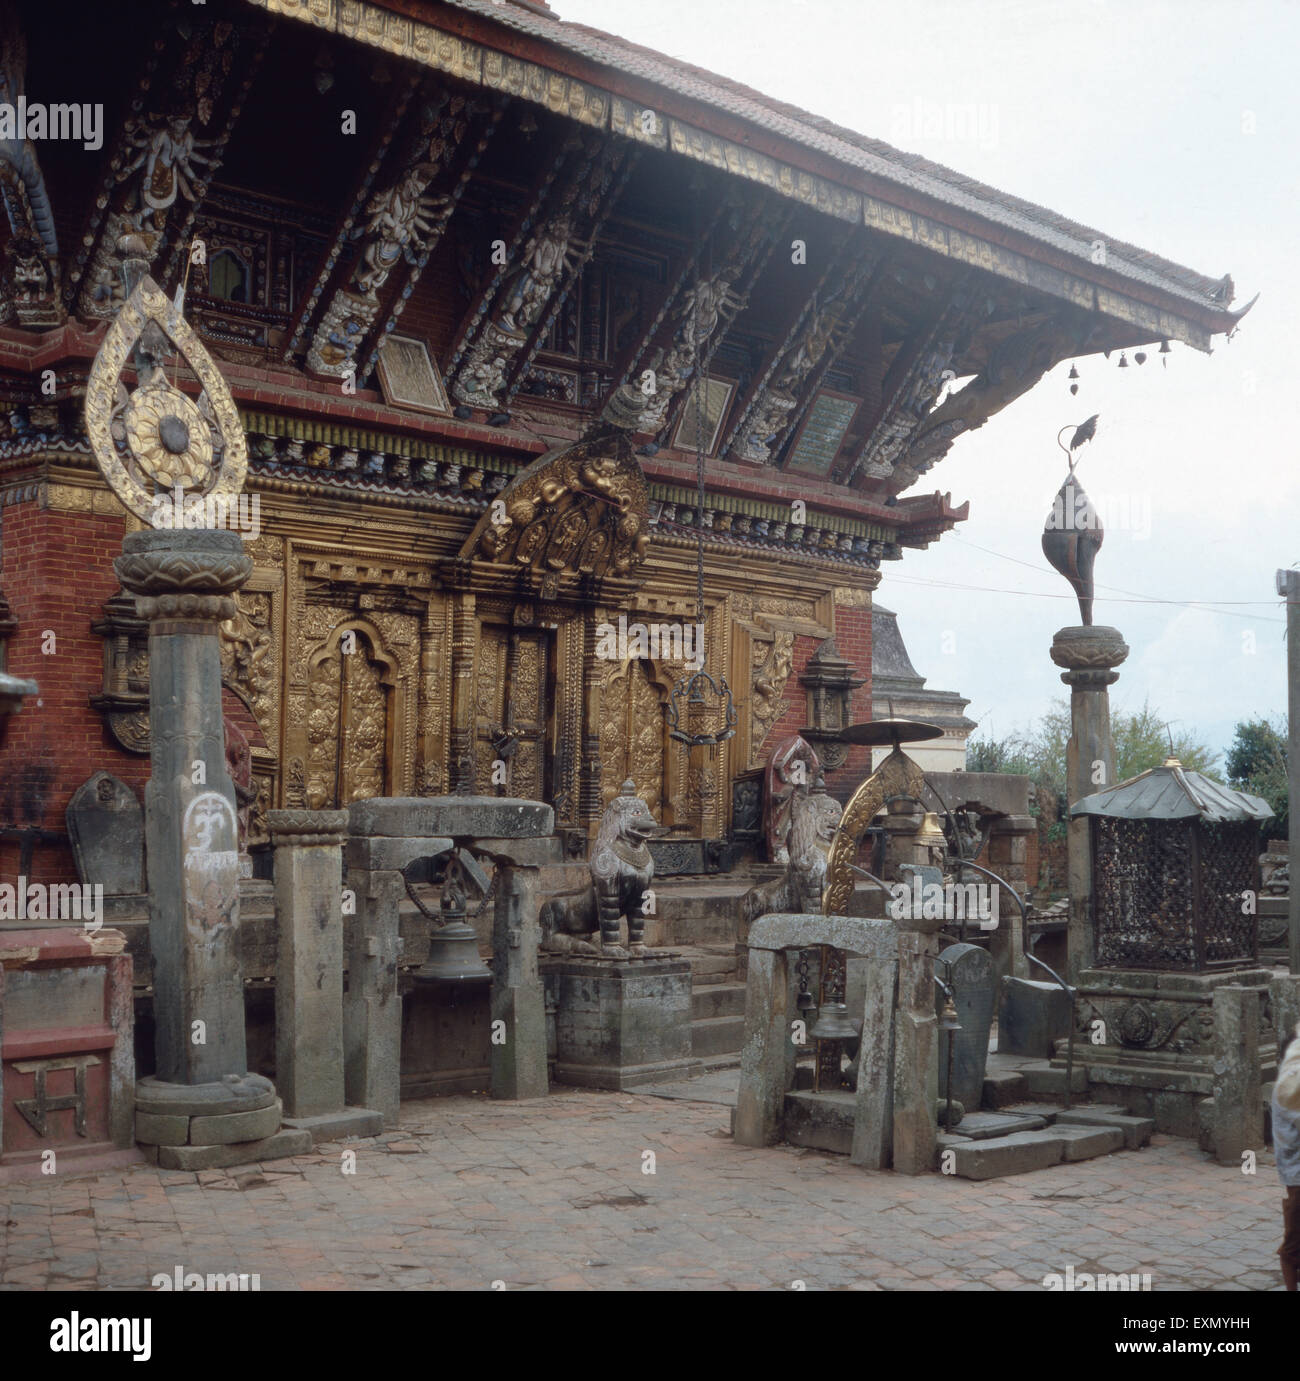 Eine Reise zu der Tempelstätte Changu Narayan im Kathmandutal, Nepal 1970er Jahre. A trip to the temple site Changu Narayan in Katmandu Valley, Nepal 1970s. Stock Photo